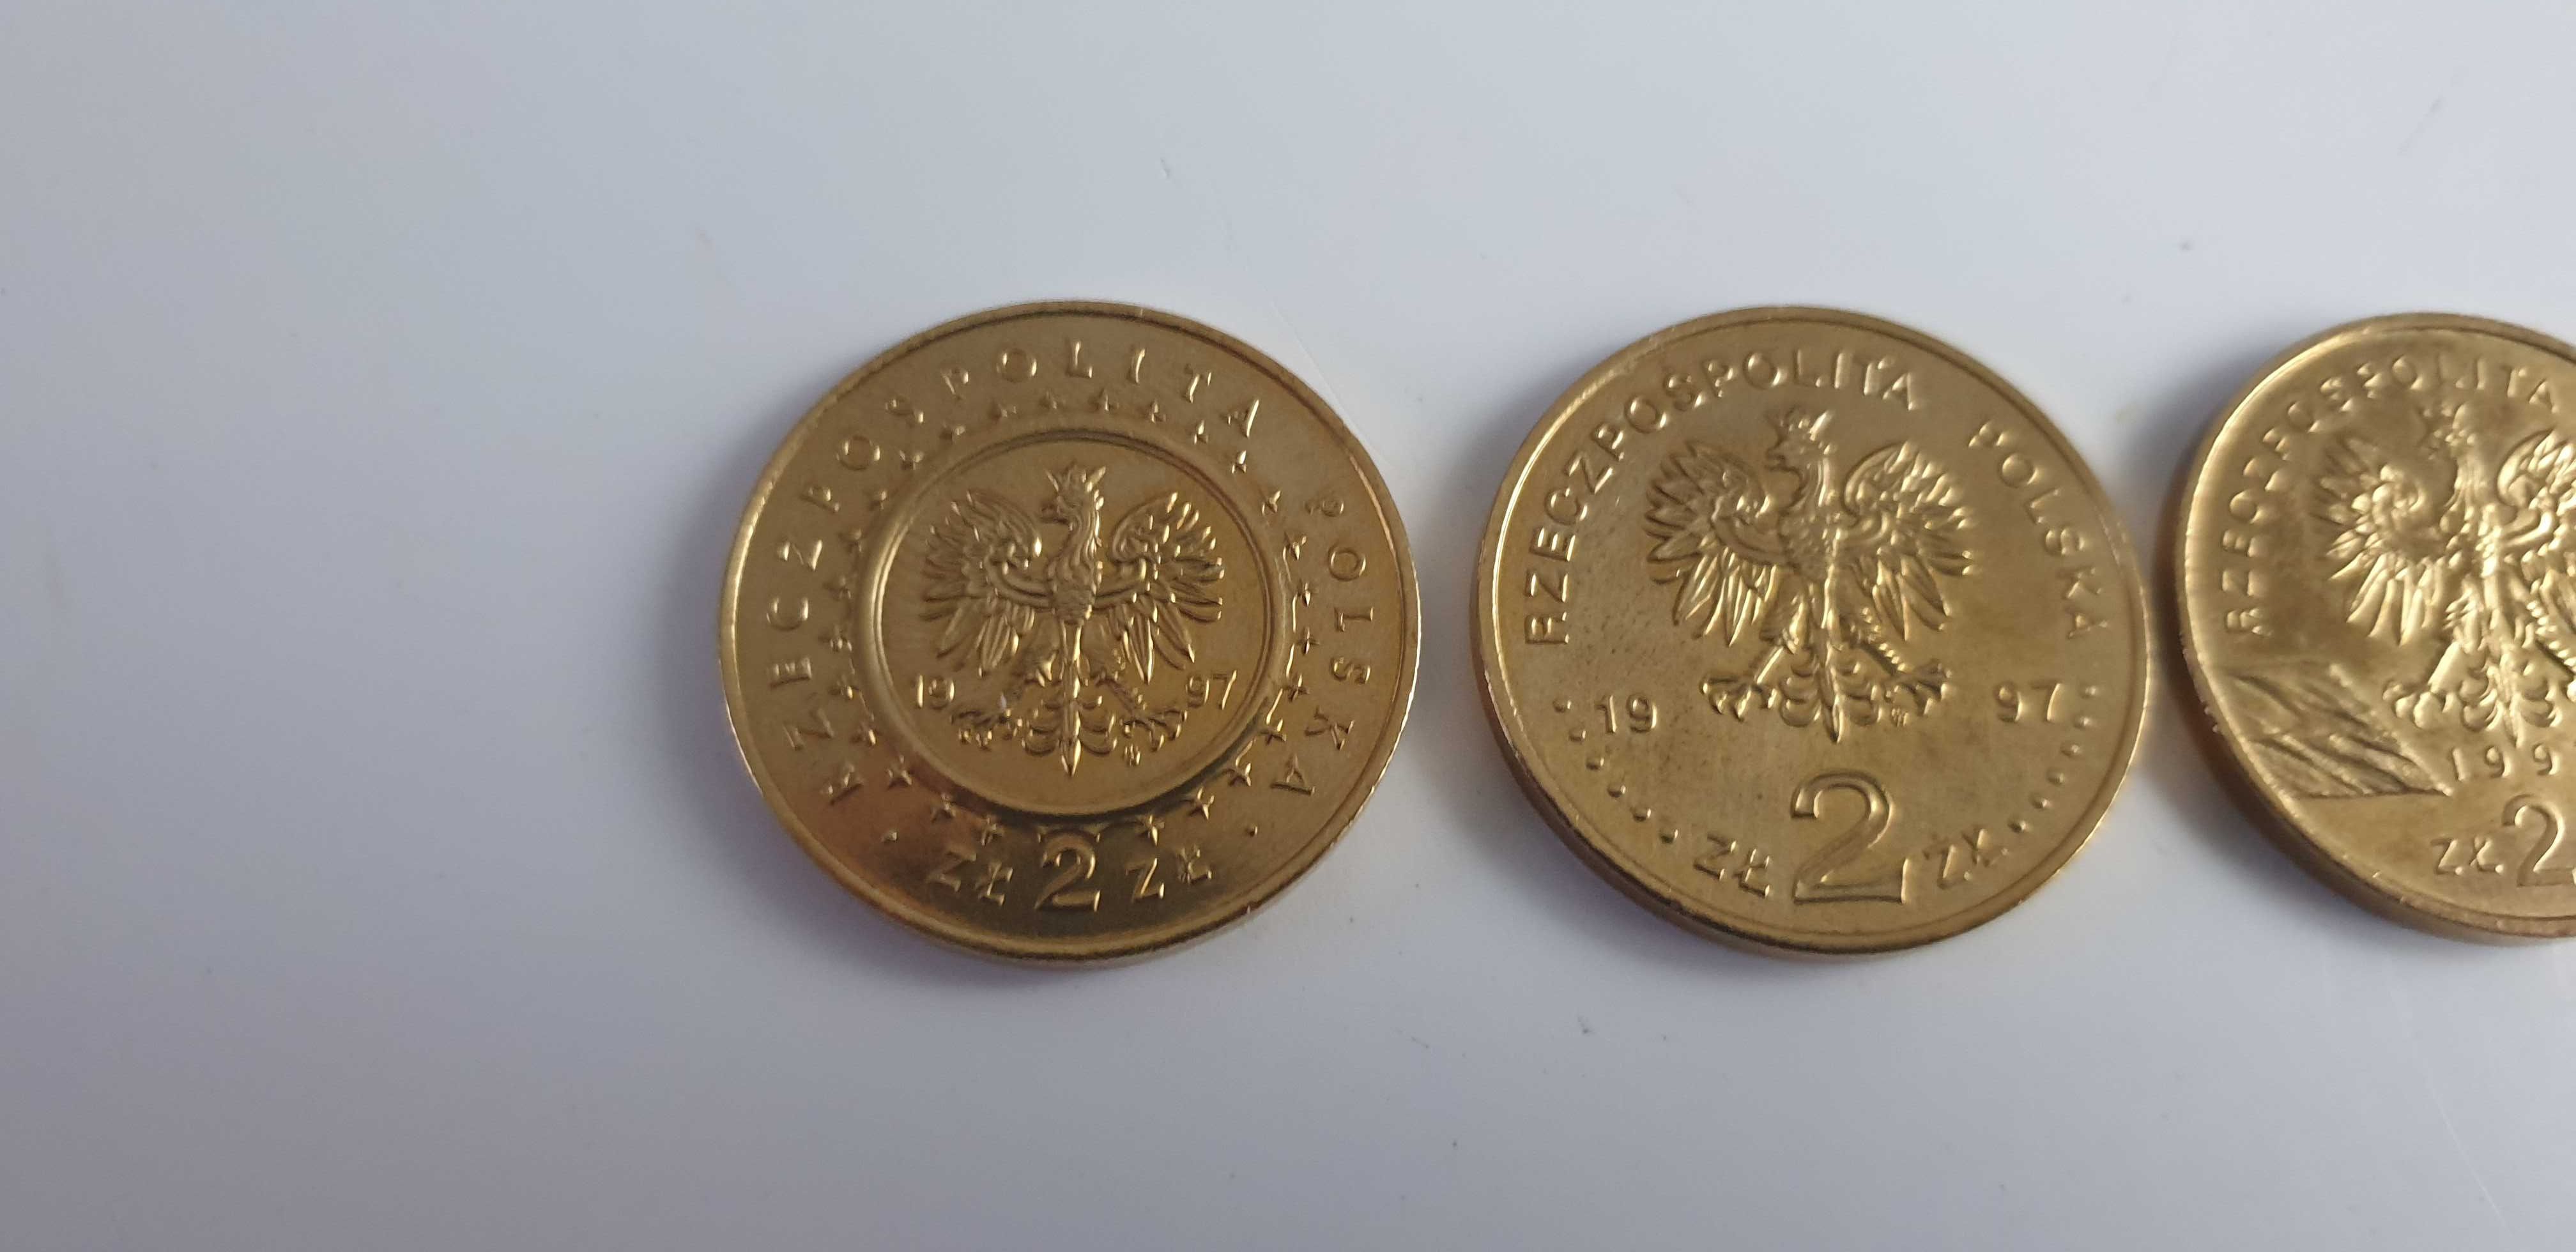 Starocie z Gdyni - Stare monety 2zł z 1997r. zestaw 3szt.